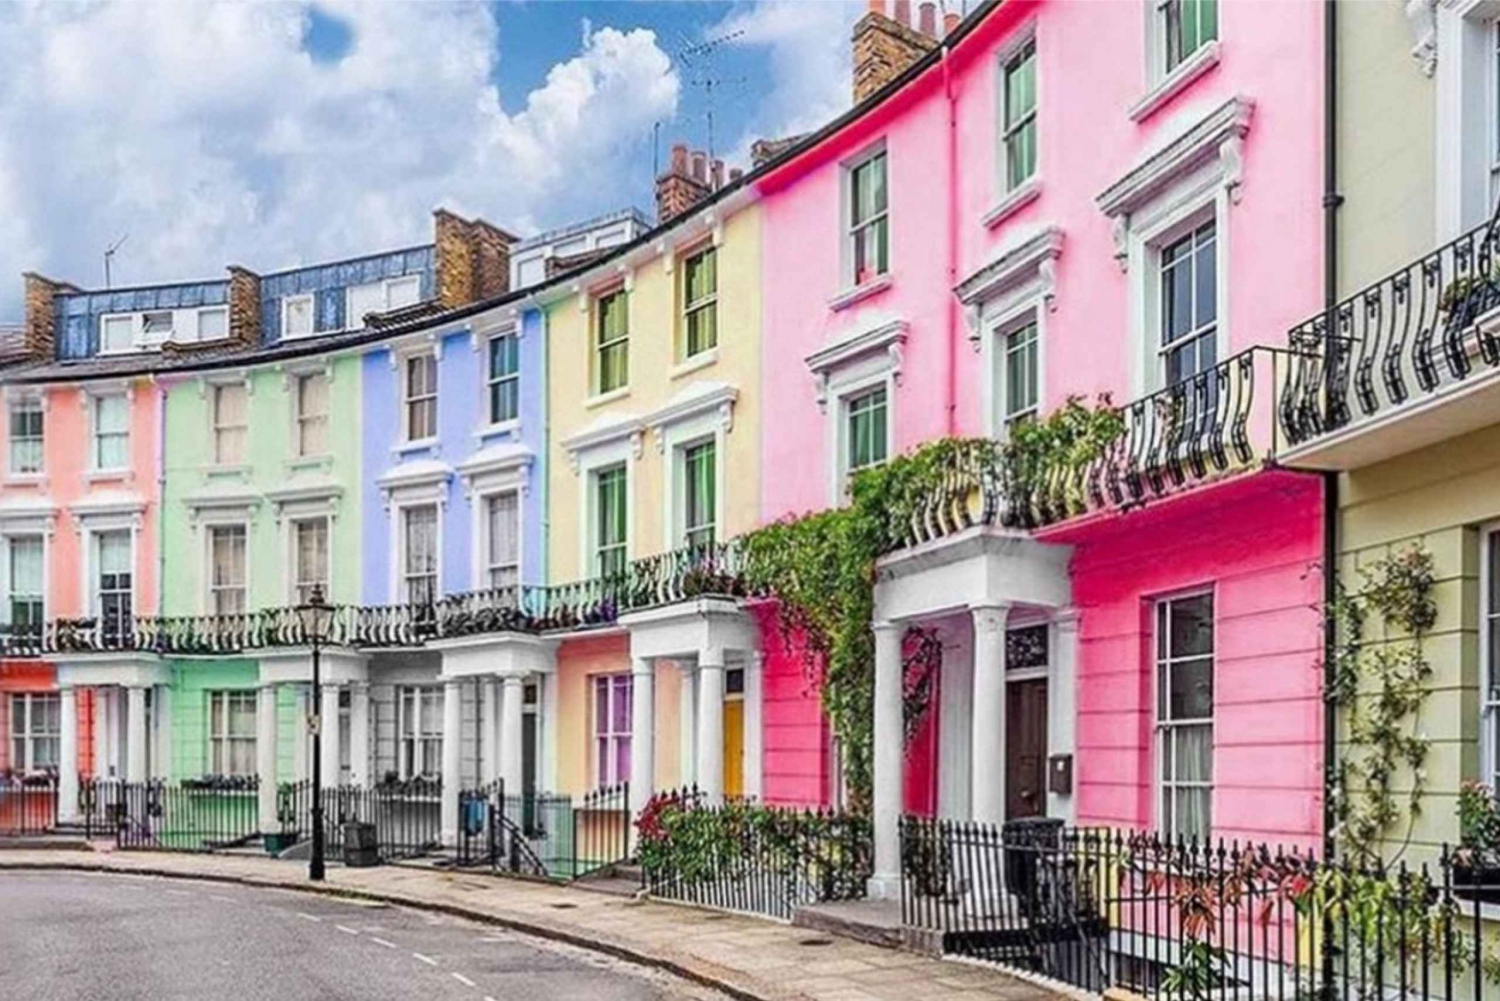 Visite photographique des couleurs de Notting Hill